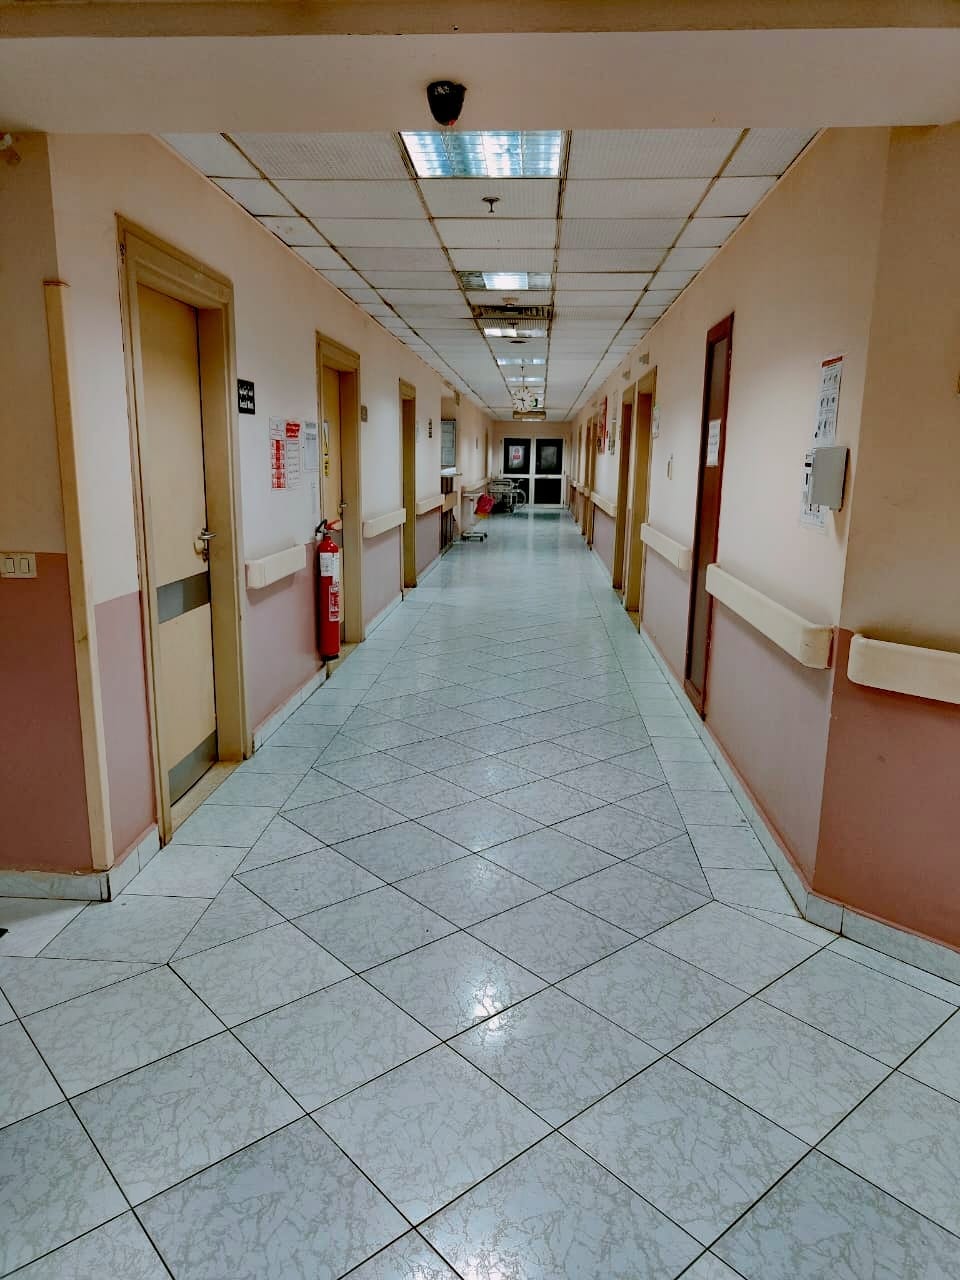 المستشفى من الداخل (1)